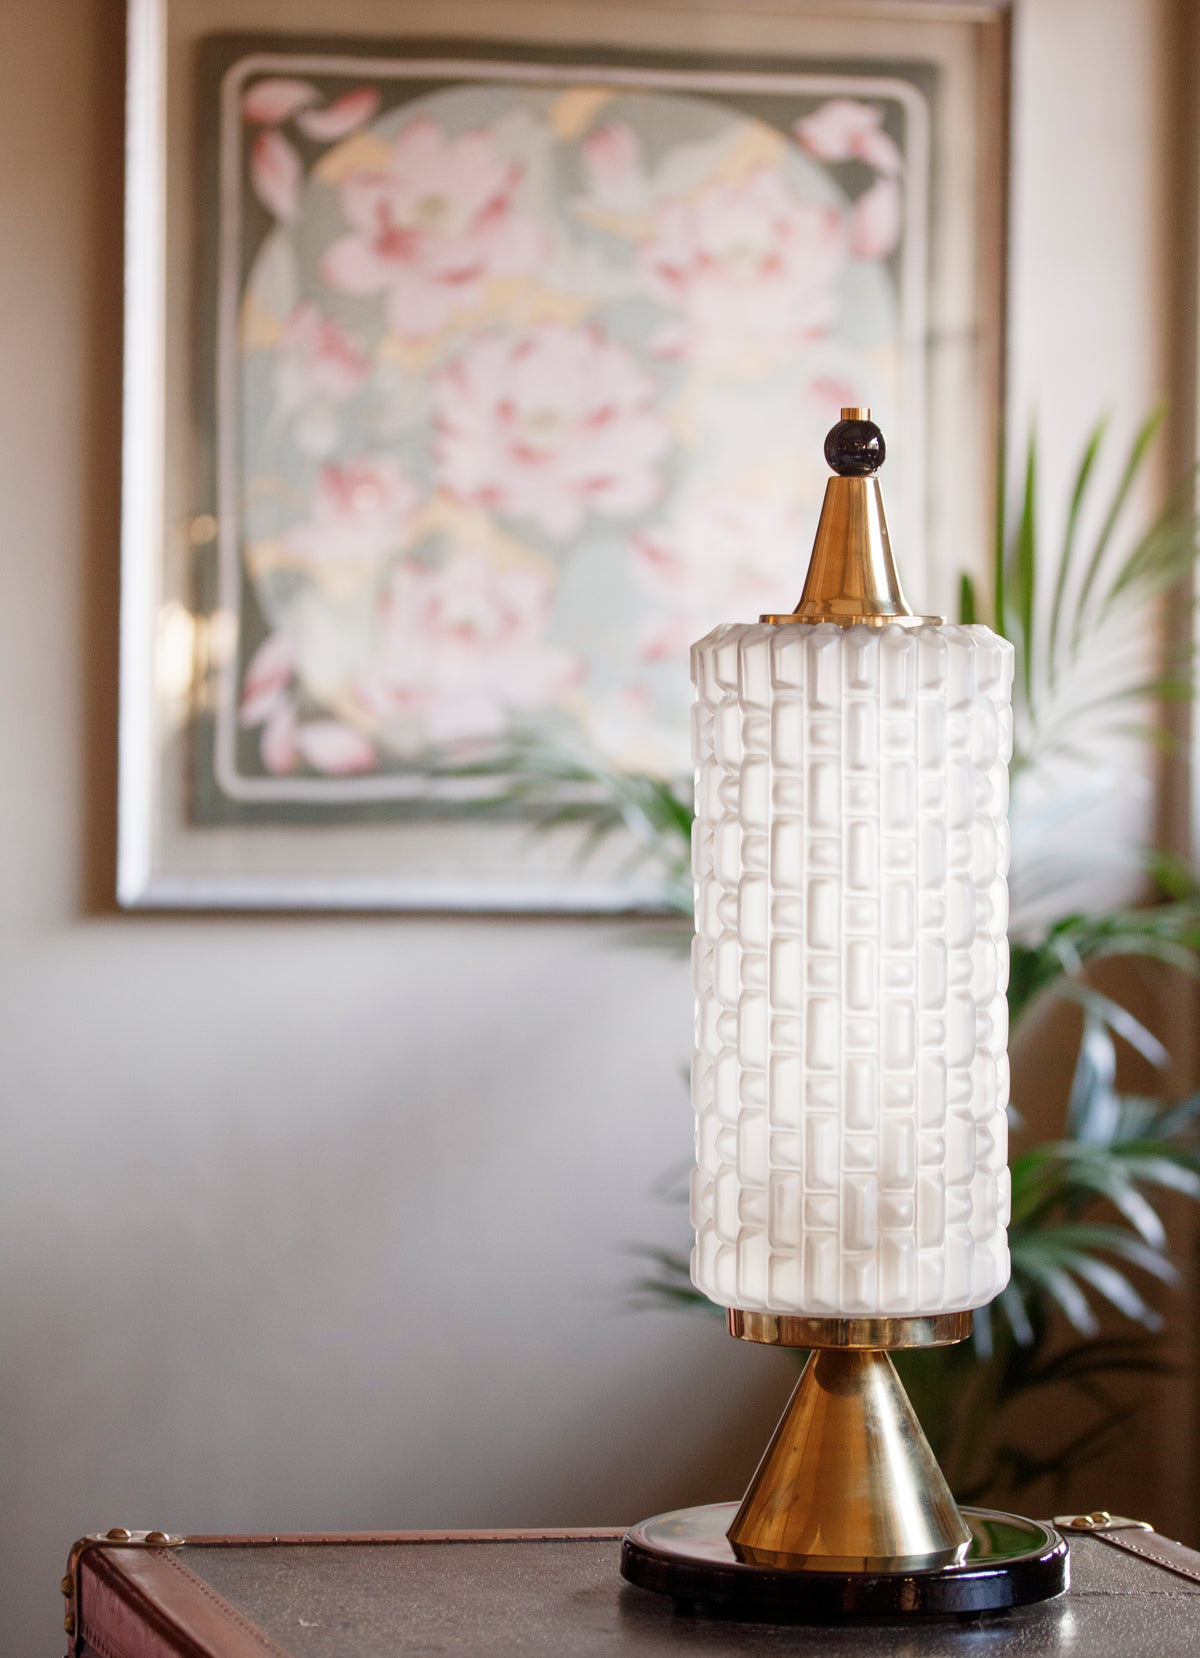 Lampada Deco in Vetro di Murano satinato - 1970 - Frosted Deco Murano Glass Table Lamp